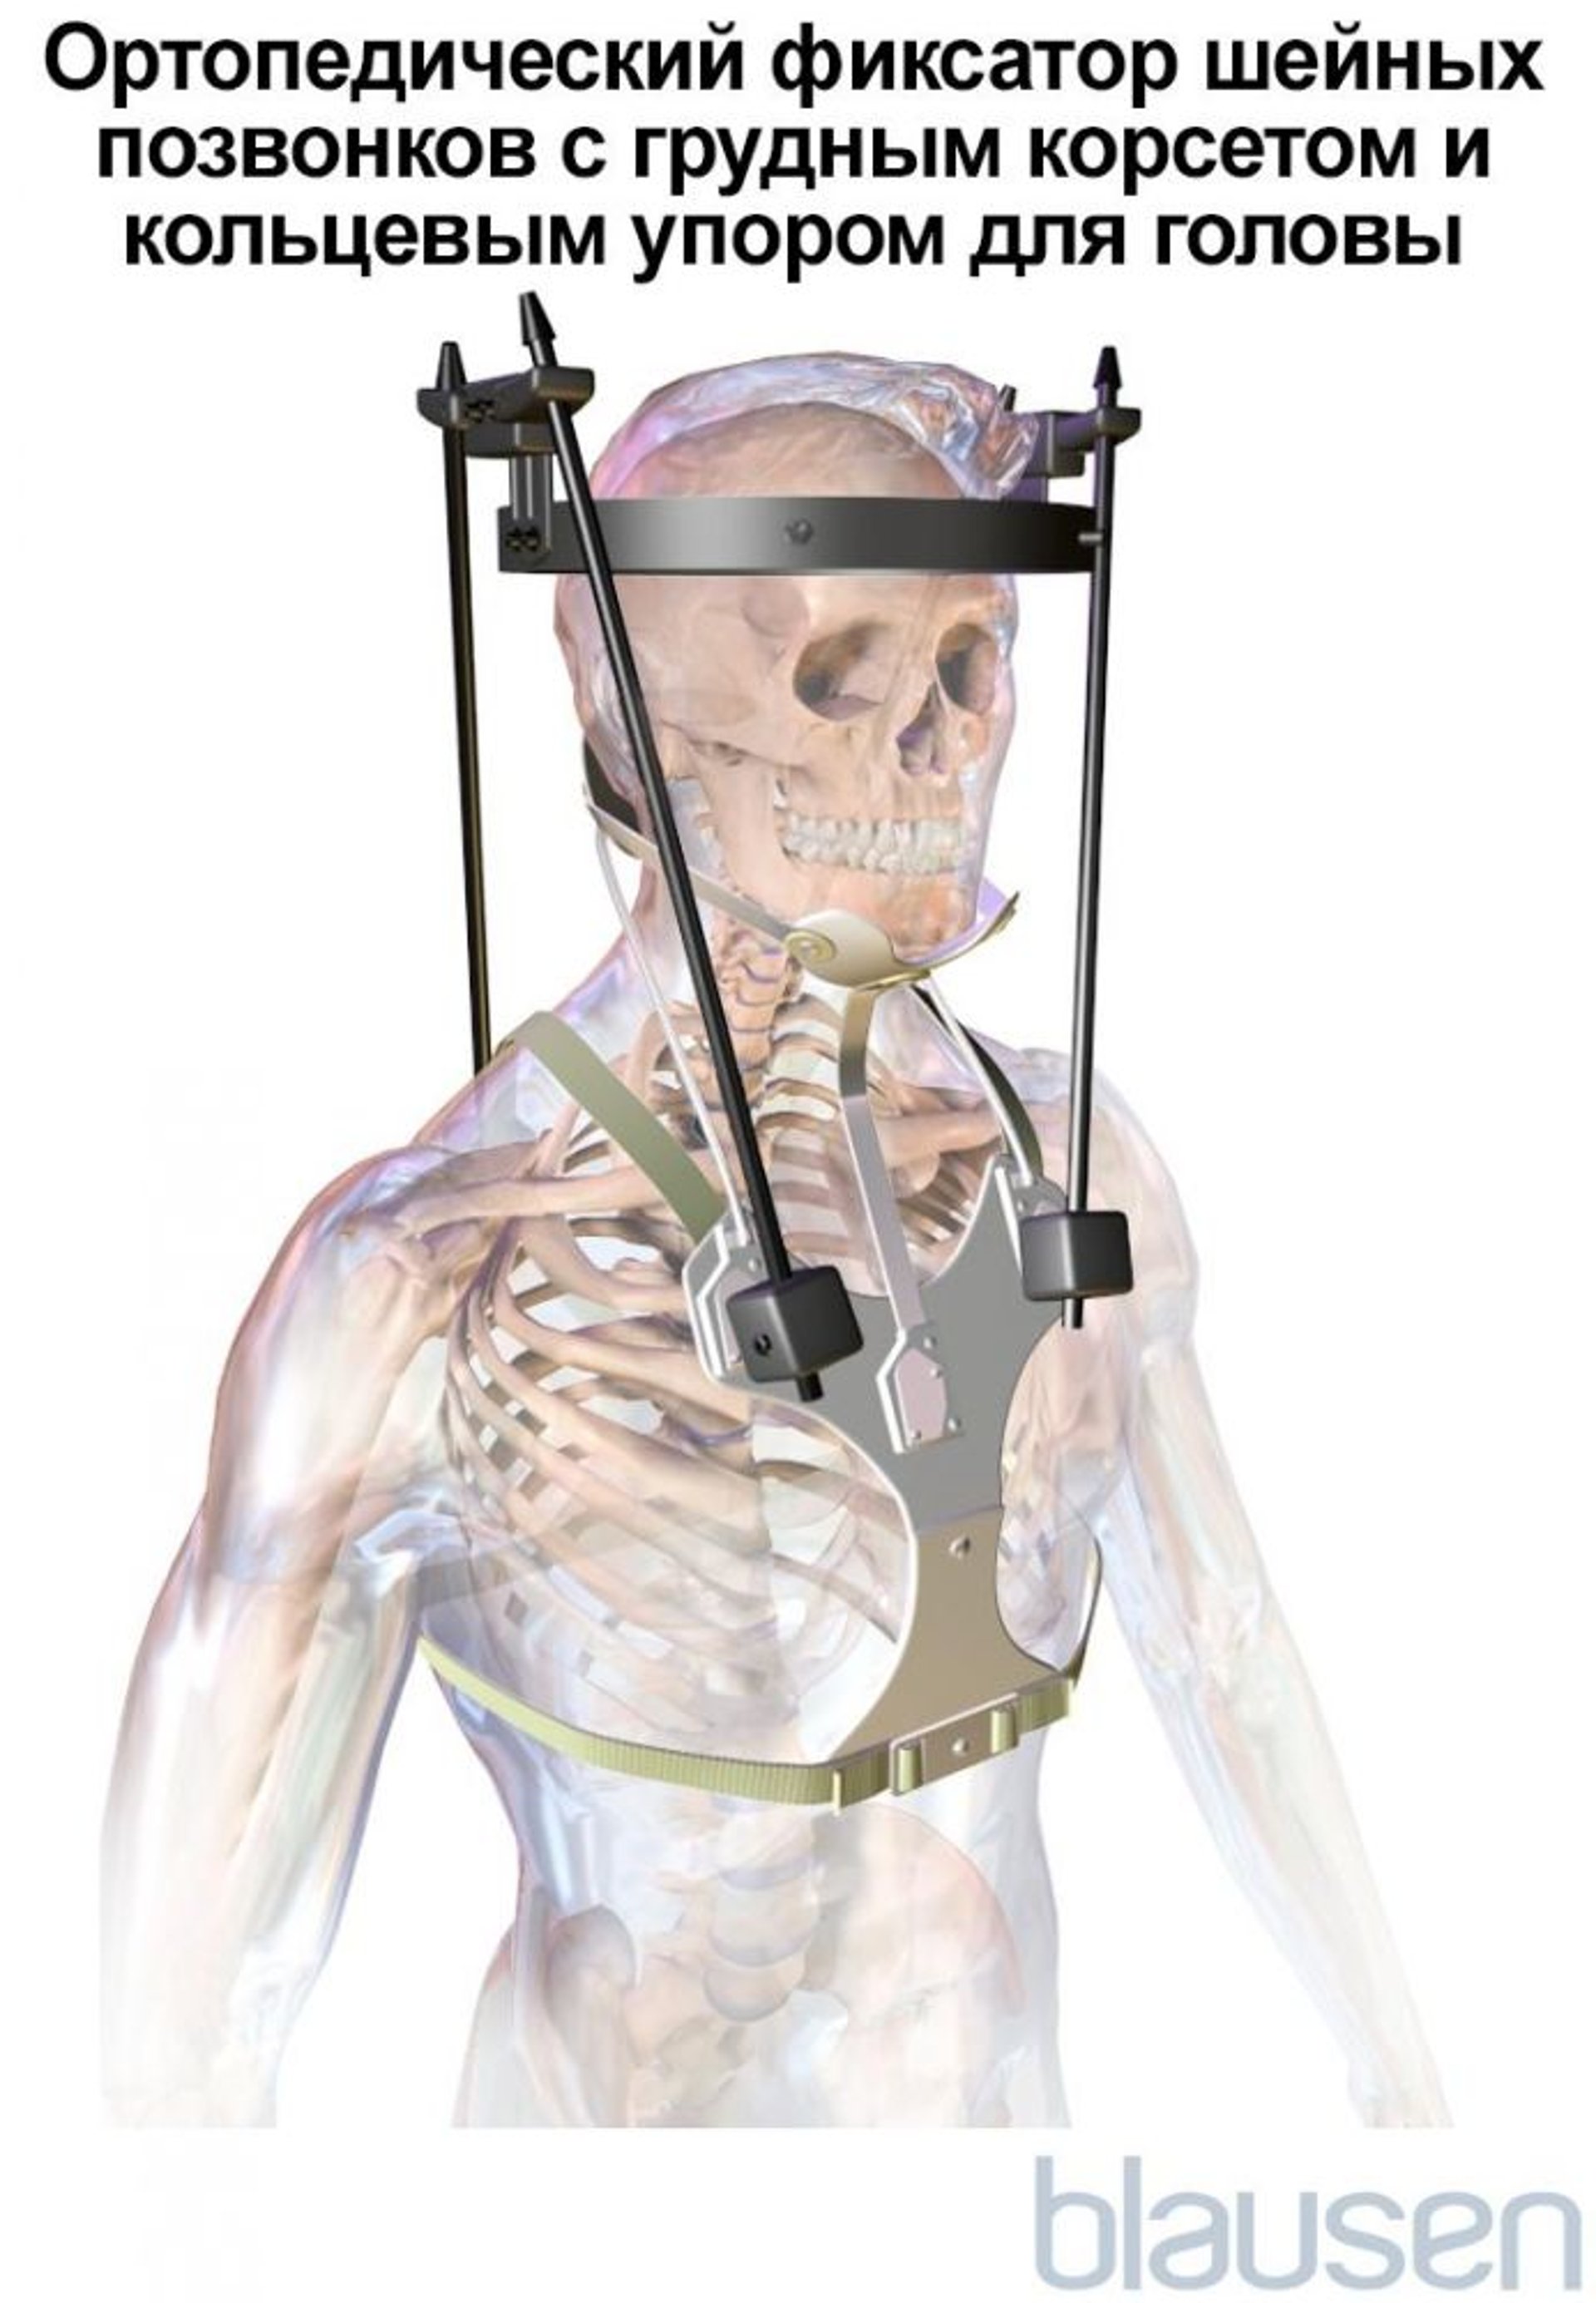 Ортопедический фиксатор шейных позвонков с грудным корсетом и кольцевым упором для головы